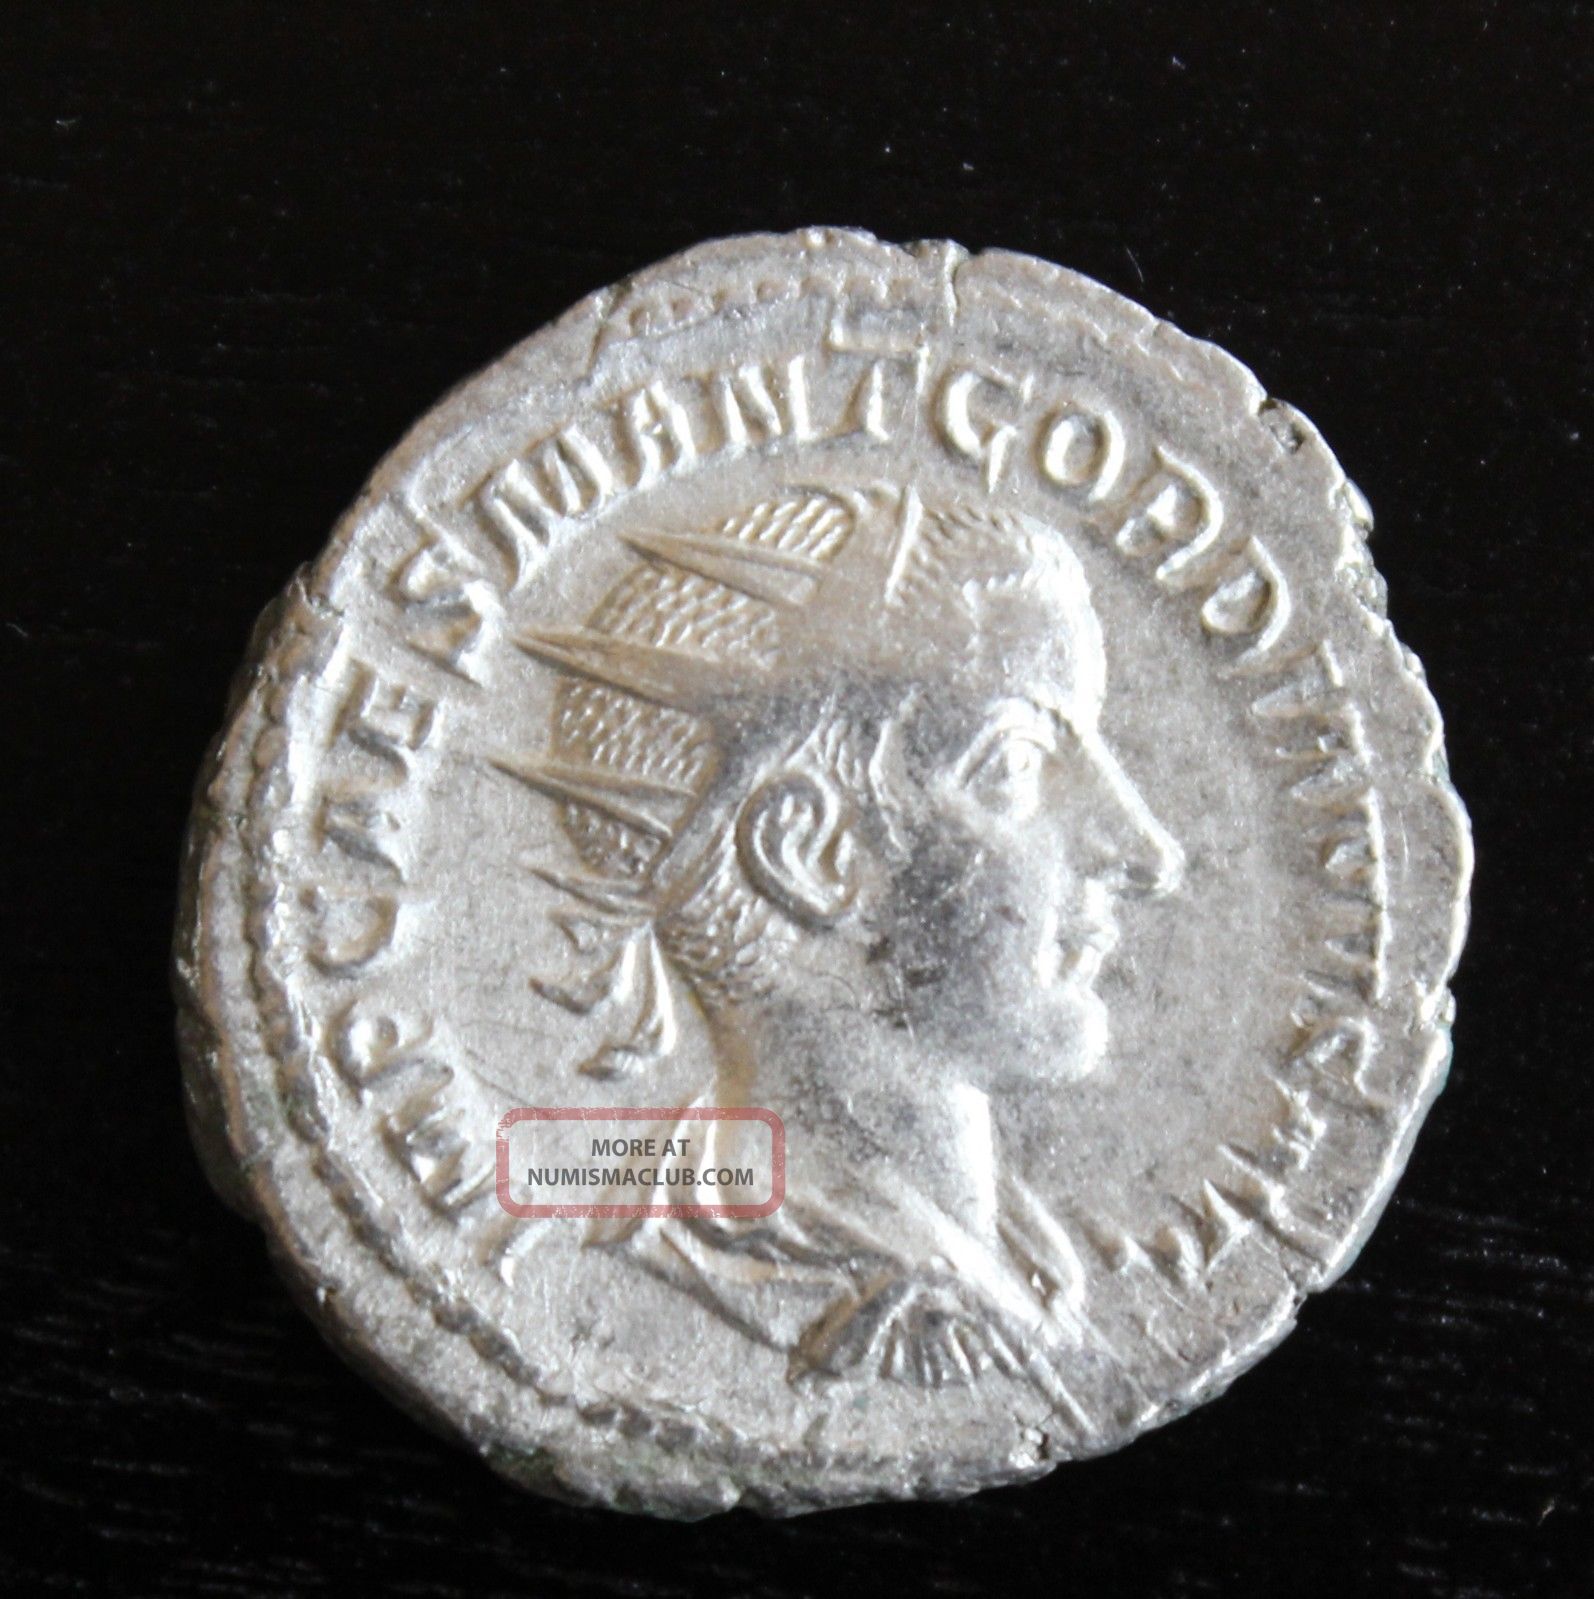 denarius coin value in dollars